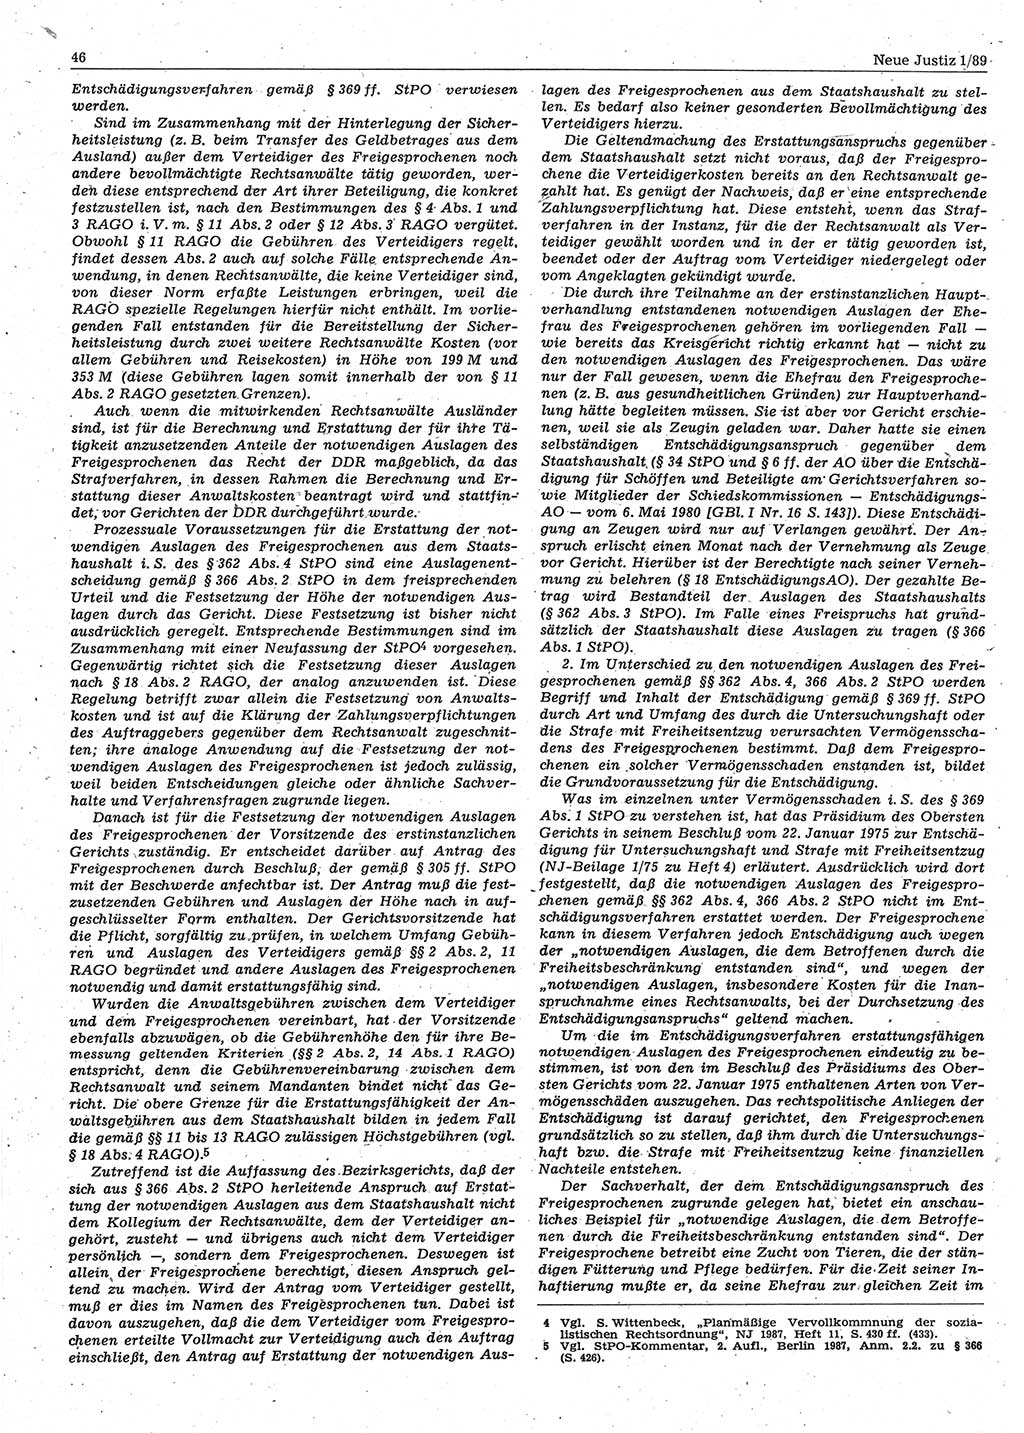 Neue Justiz (NJ), Zeitschrift für sozialistisches Recht und Gesetzlichkeit [Deutsche Demokratische Republik (DDR)], 43. Jahrgang 1989, Seite 46 (NJ DDR 1989, S. 46)